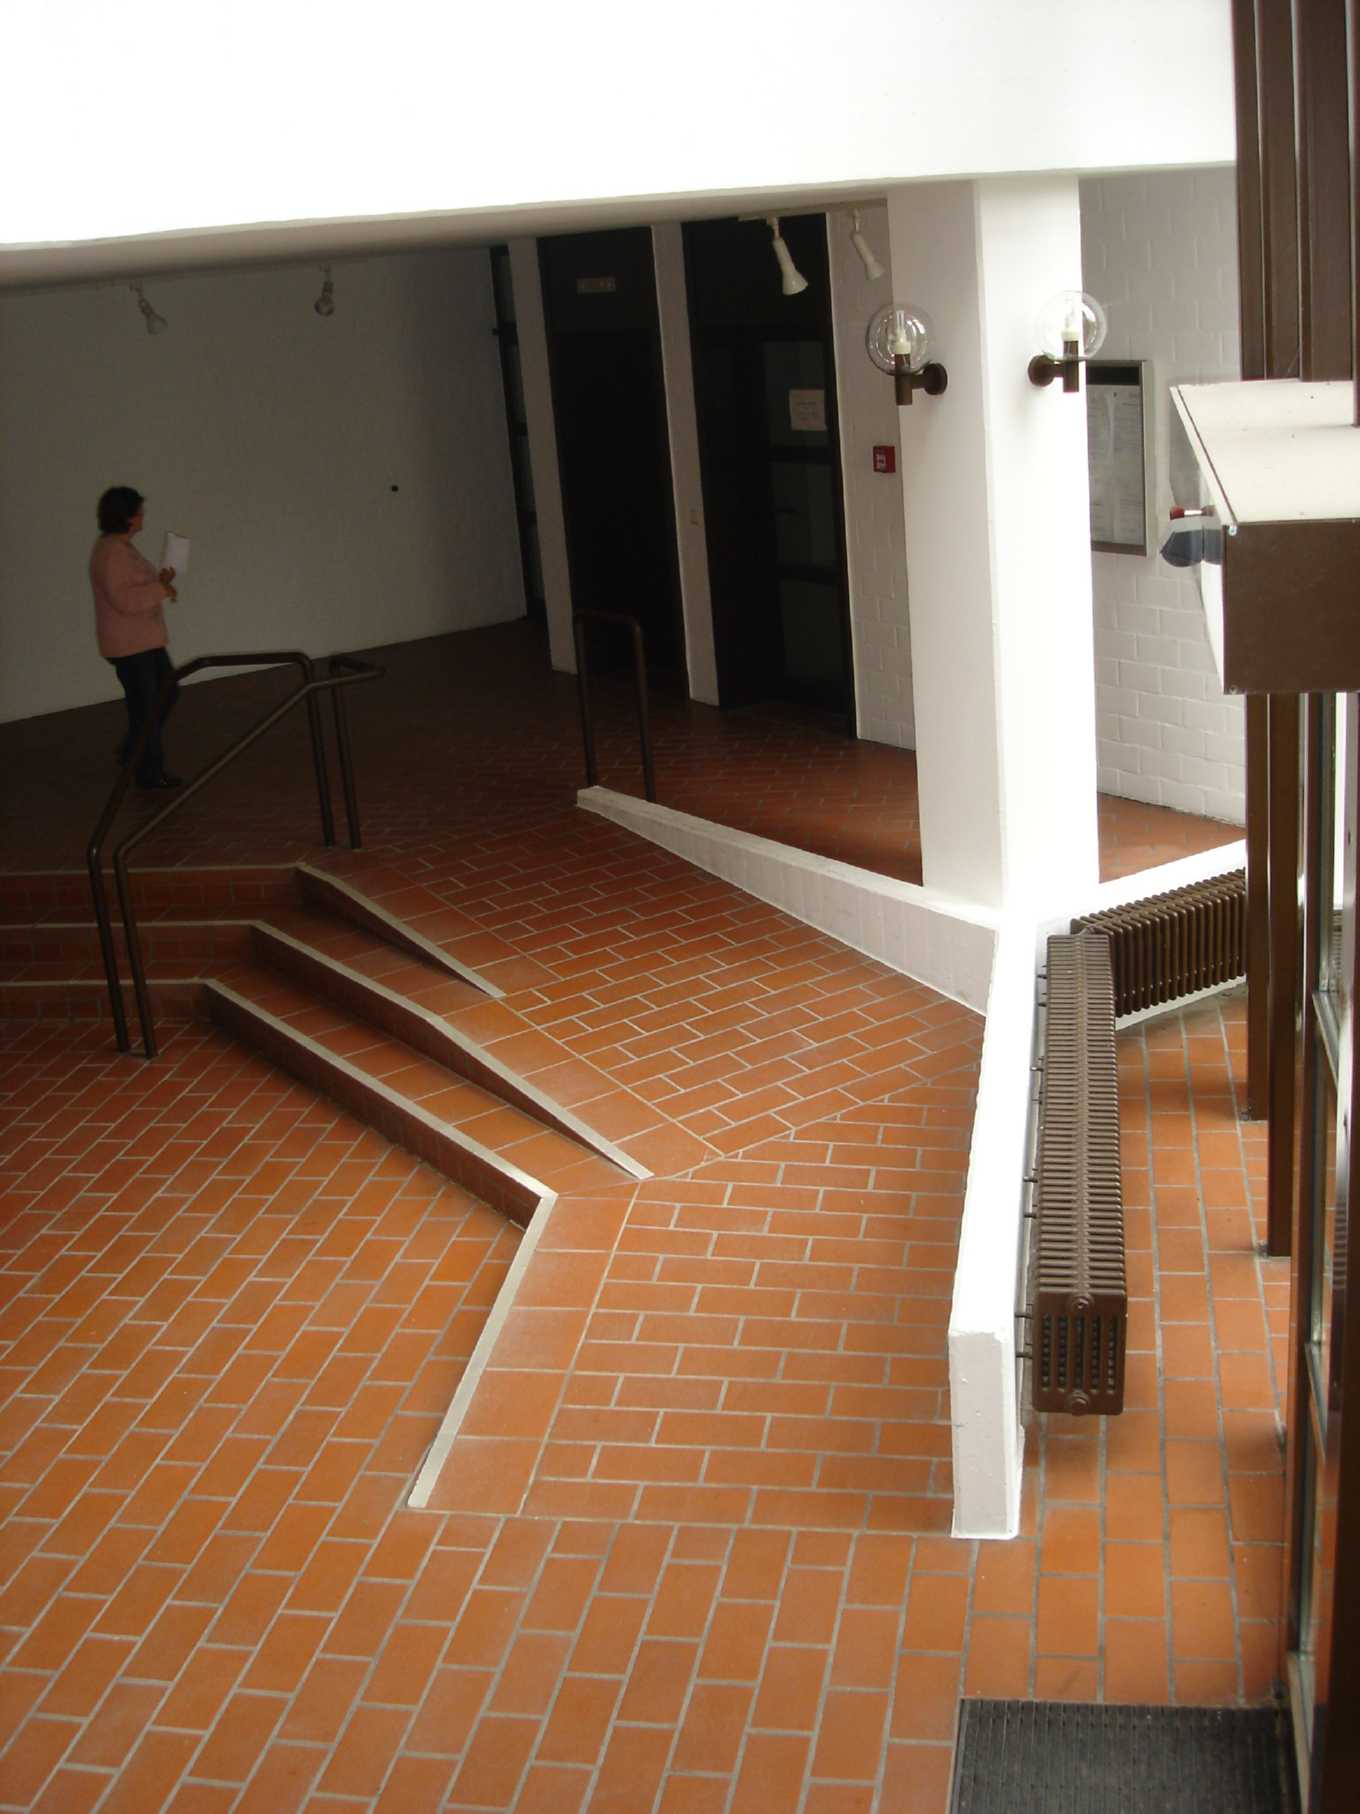 Die Rampe zwischen automatischer Türe und Aufzug im Foyer des Amtsgerichts Ulm